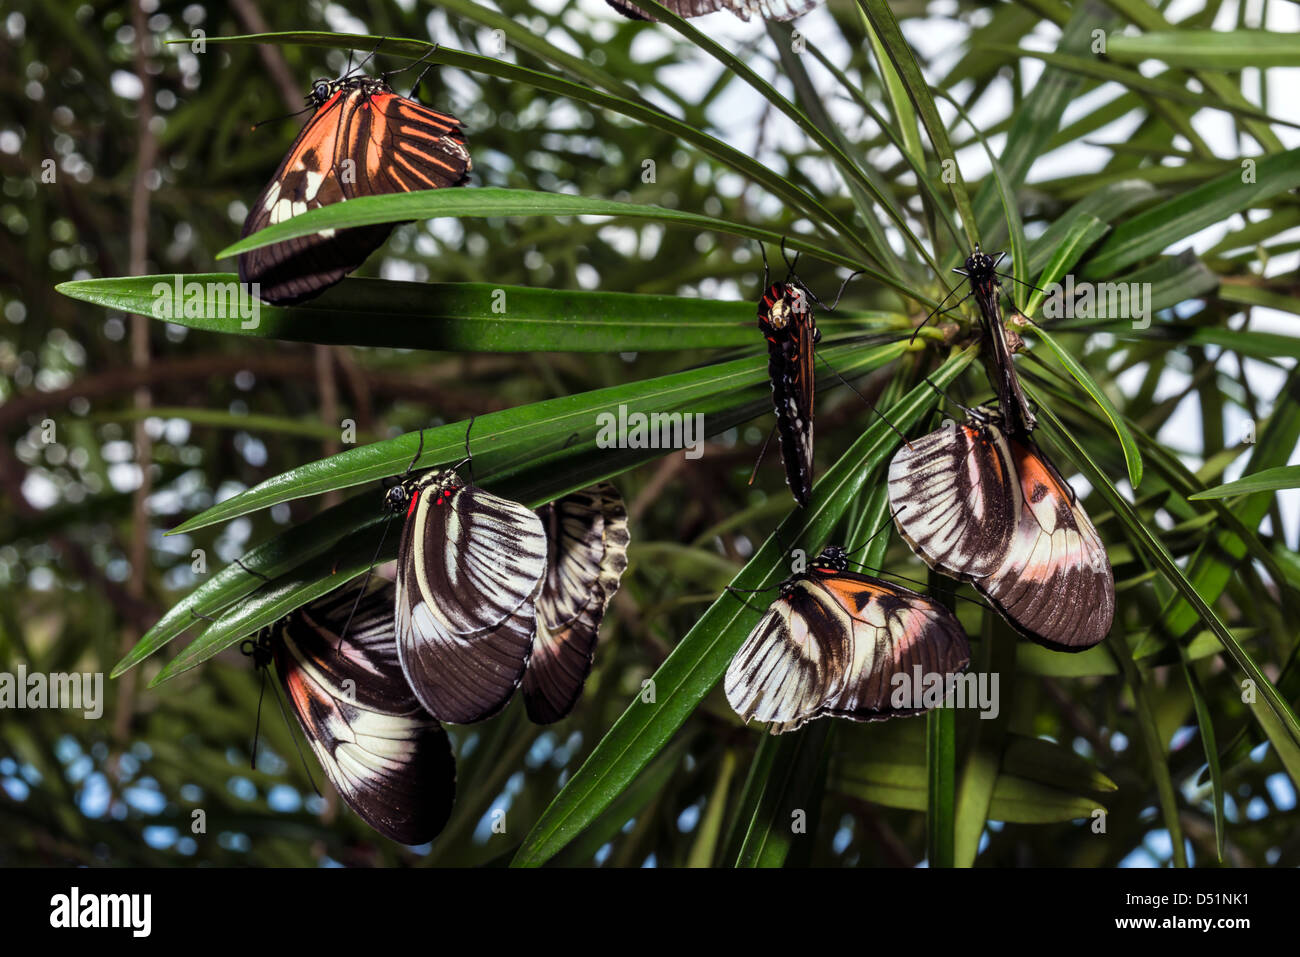 Día de mariposas volaban insectos lepidópteros Heliconius animal Foto de stock